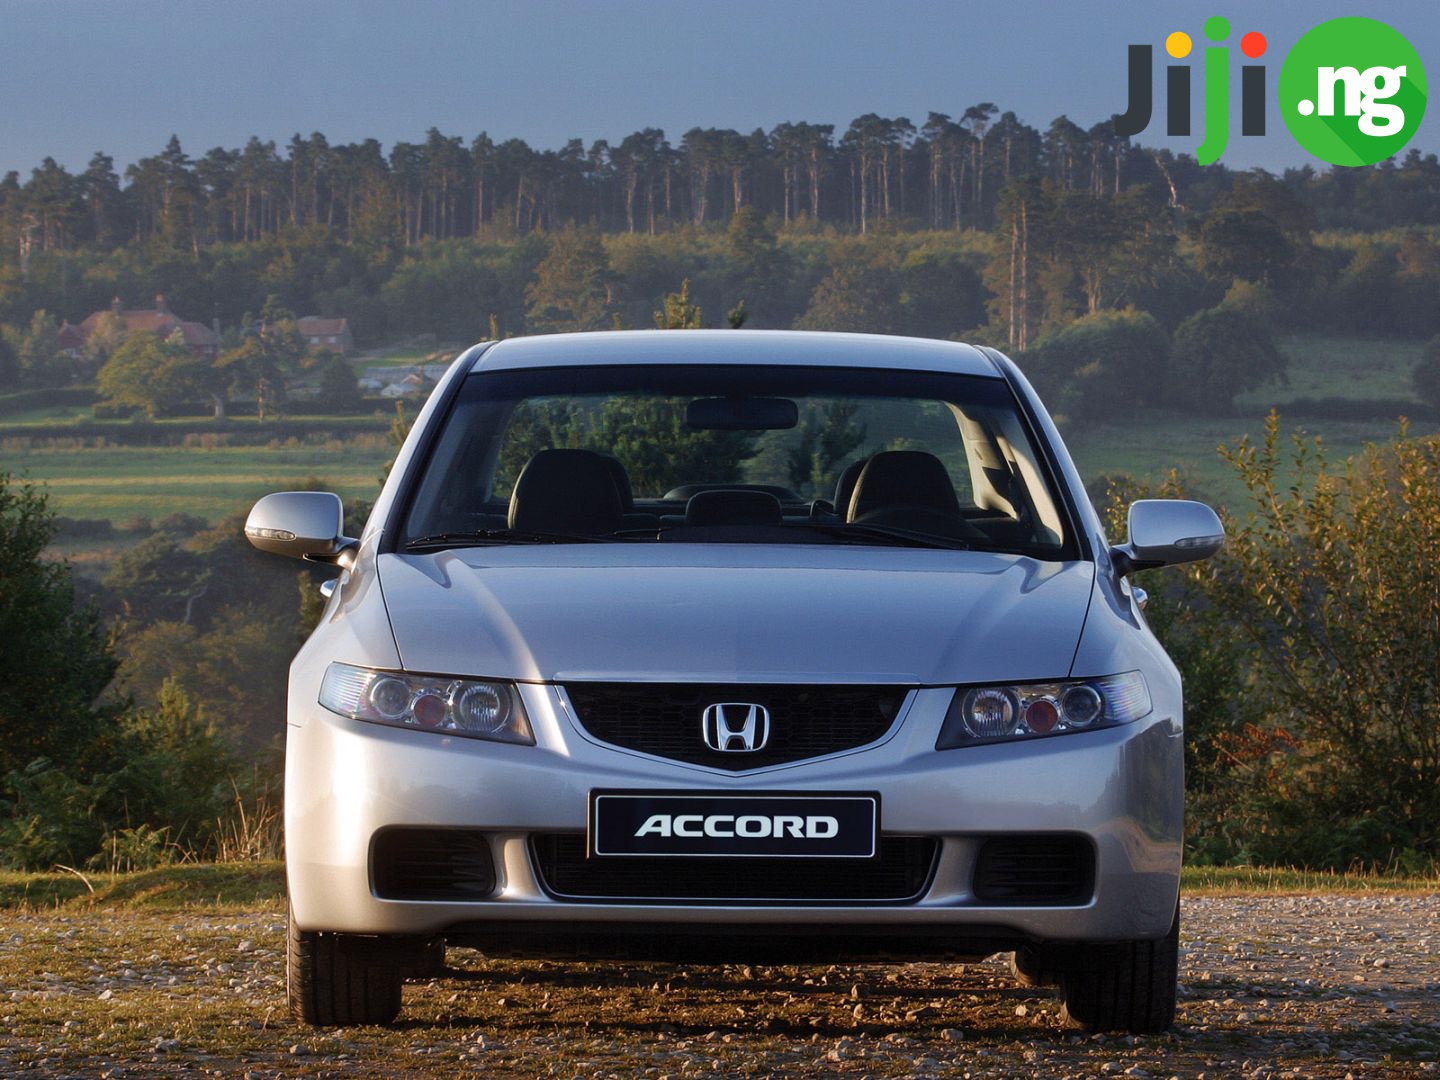 Honda Accord reviews